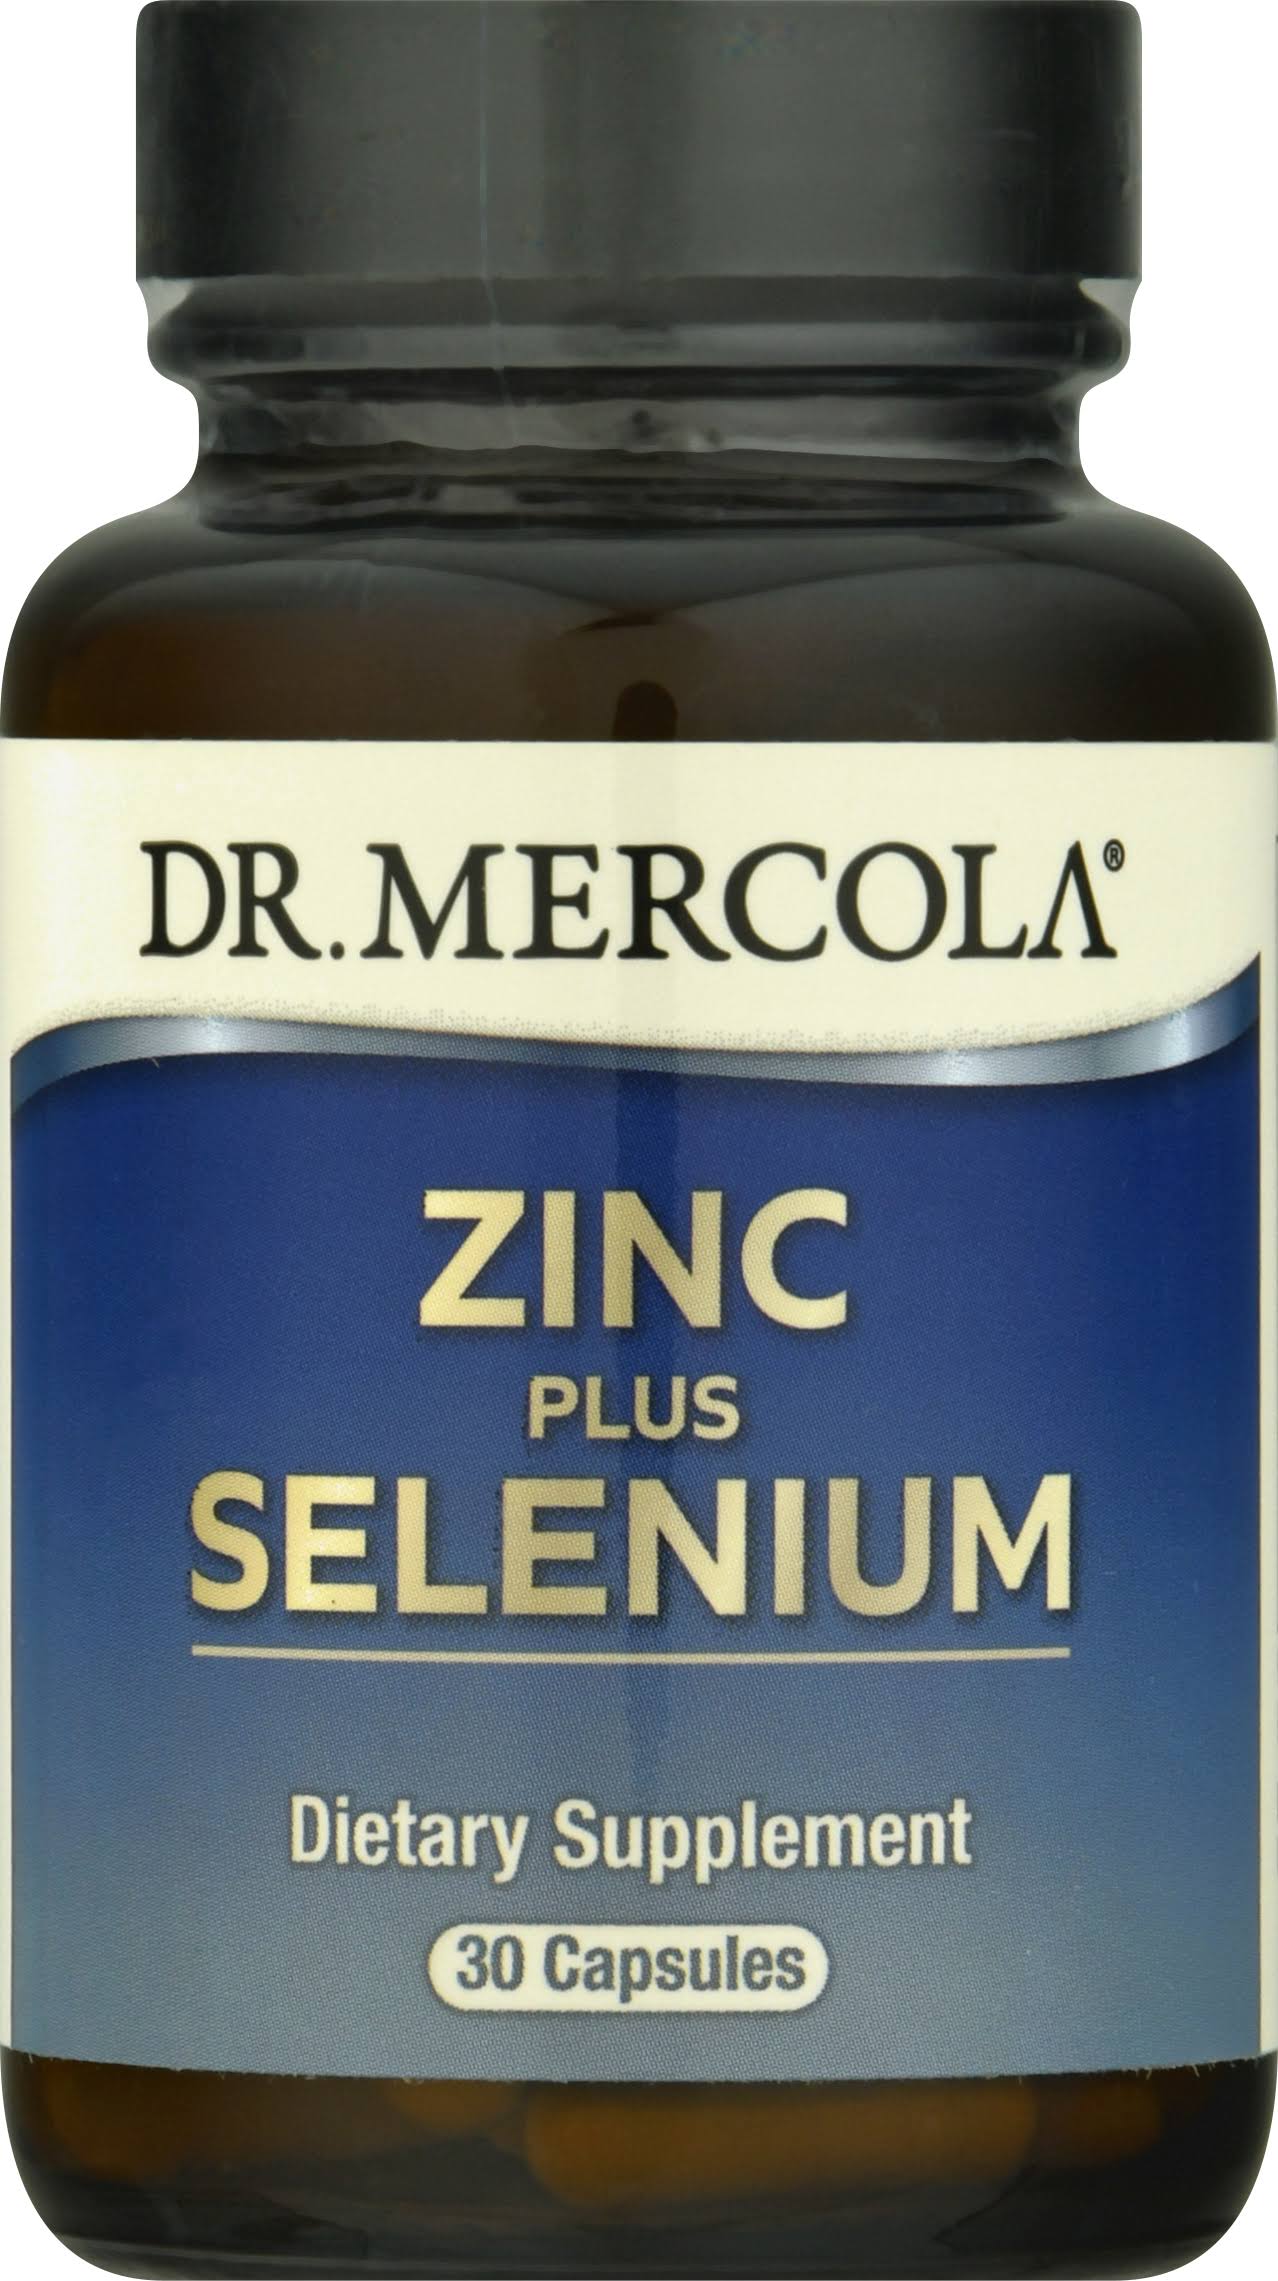 Dr Mercola Zinc Plus Selenium - 30 Capsules